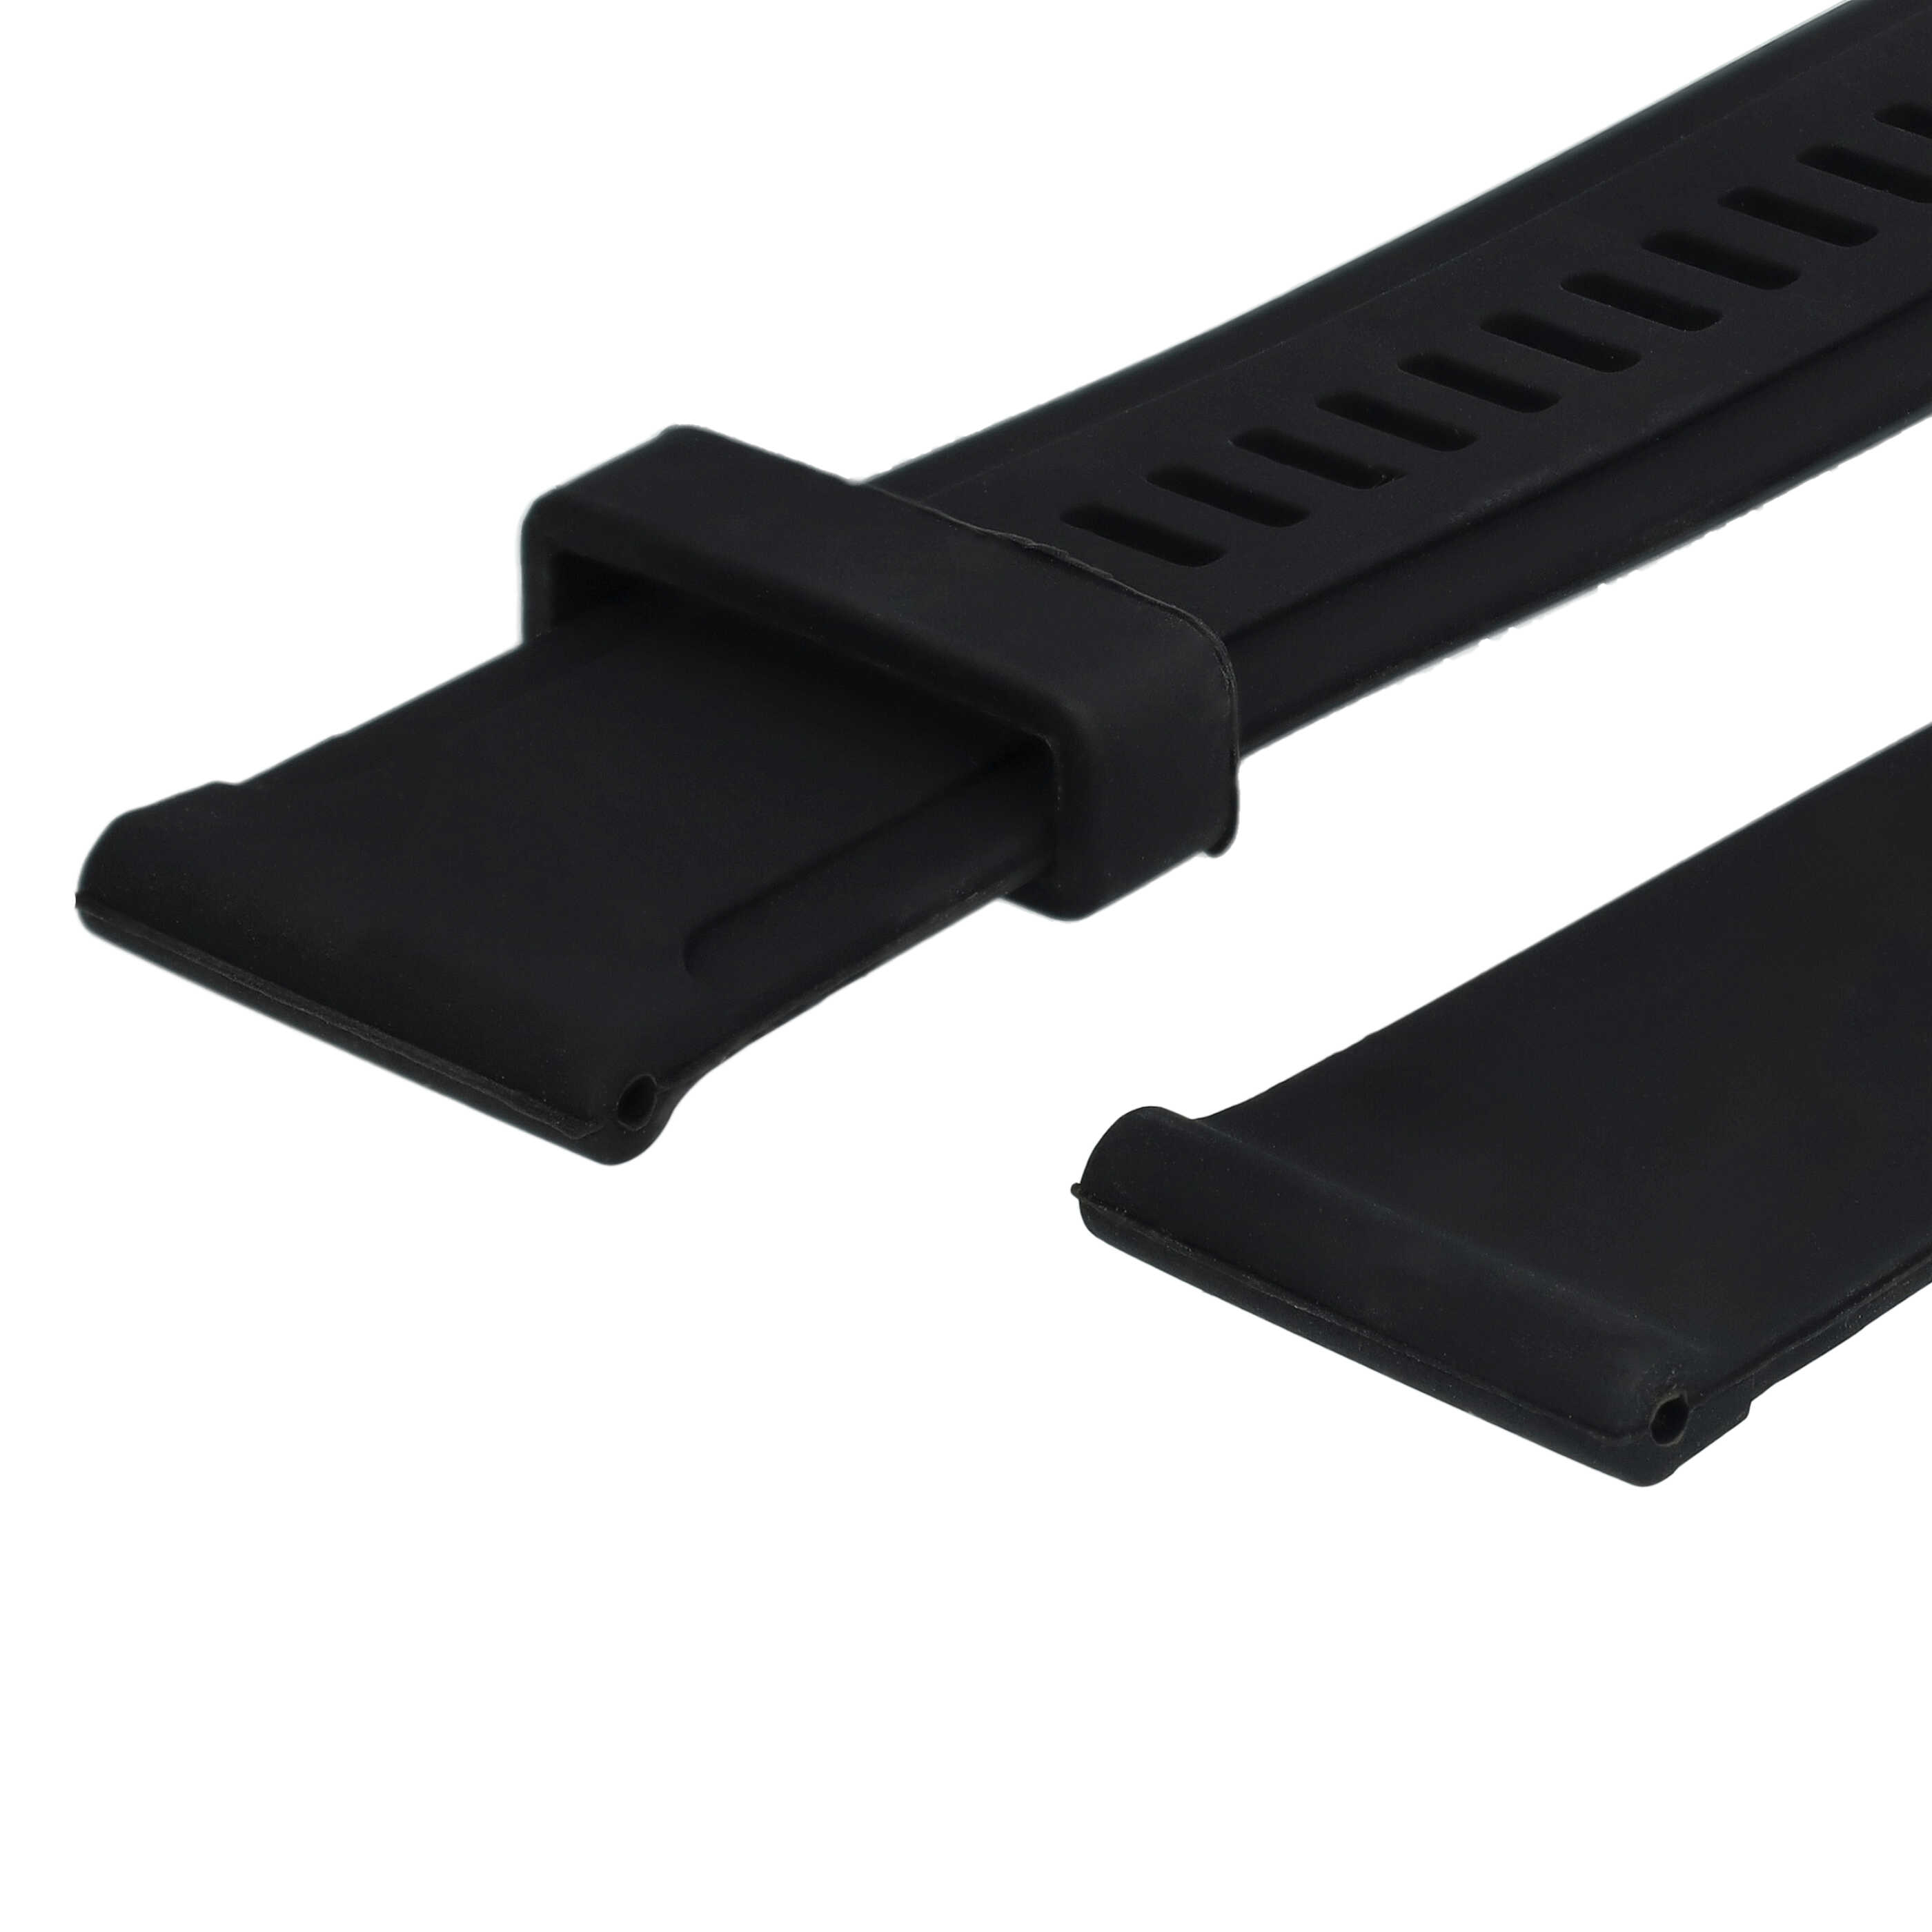 wristband L for Suunto Smartwatch - 12.5cm + 8.5 cm long, silicone, black